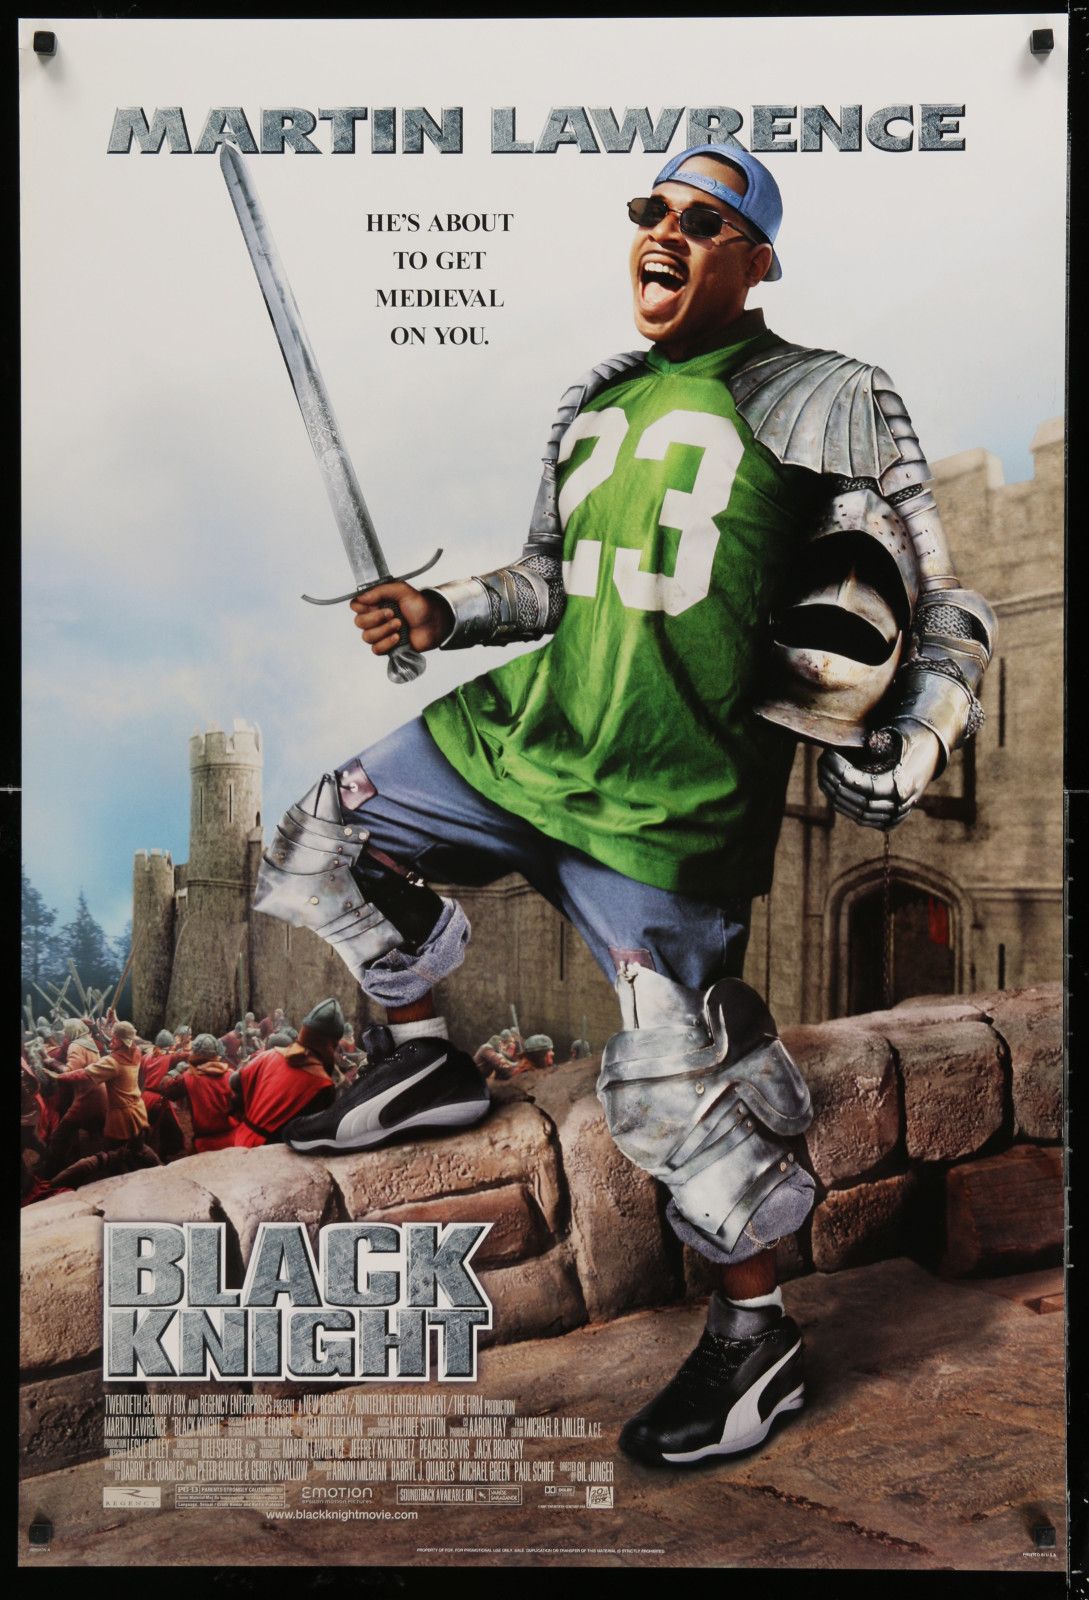 Butch C. reccomend The black knight comedy